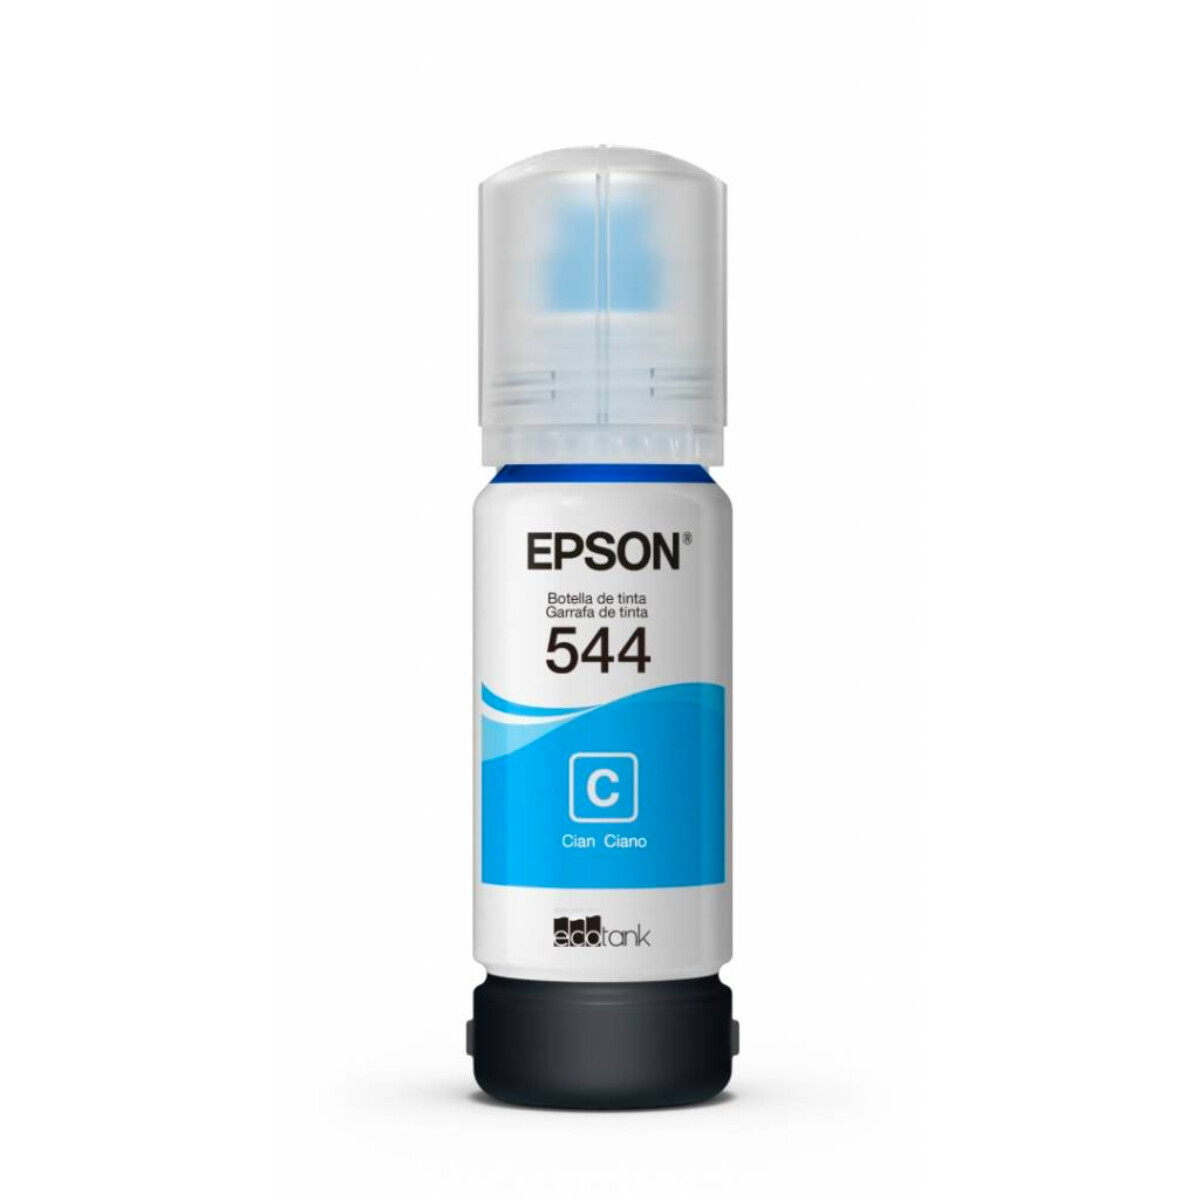 Botella de tinta epson t544 65ml - Cyan 